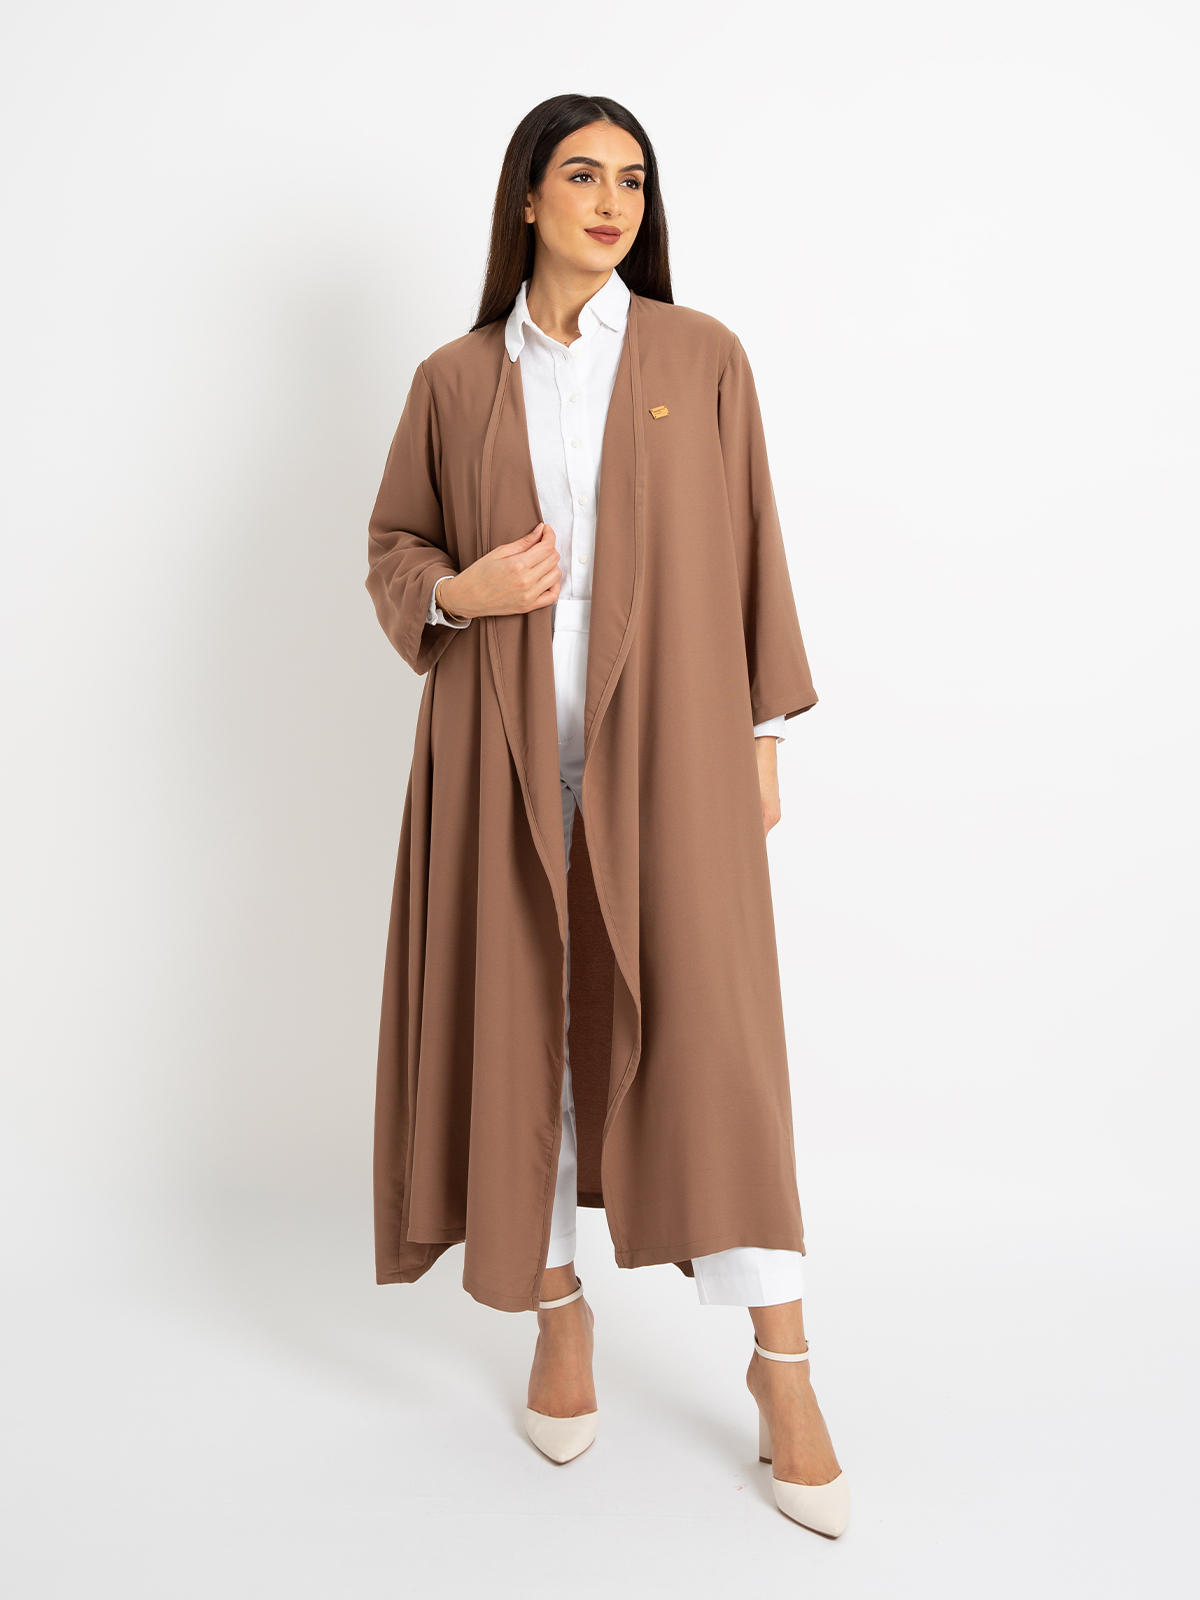 Kaafmeem women clothing regular fit plain brown color midi abaya in crepe fabric 